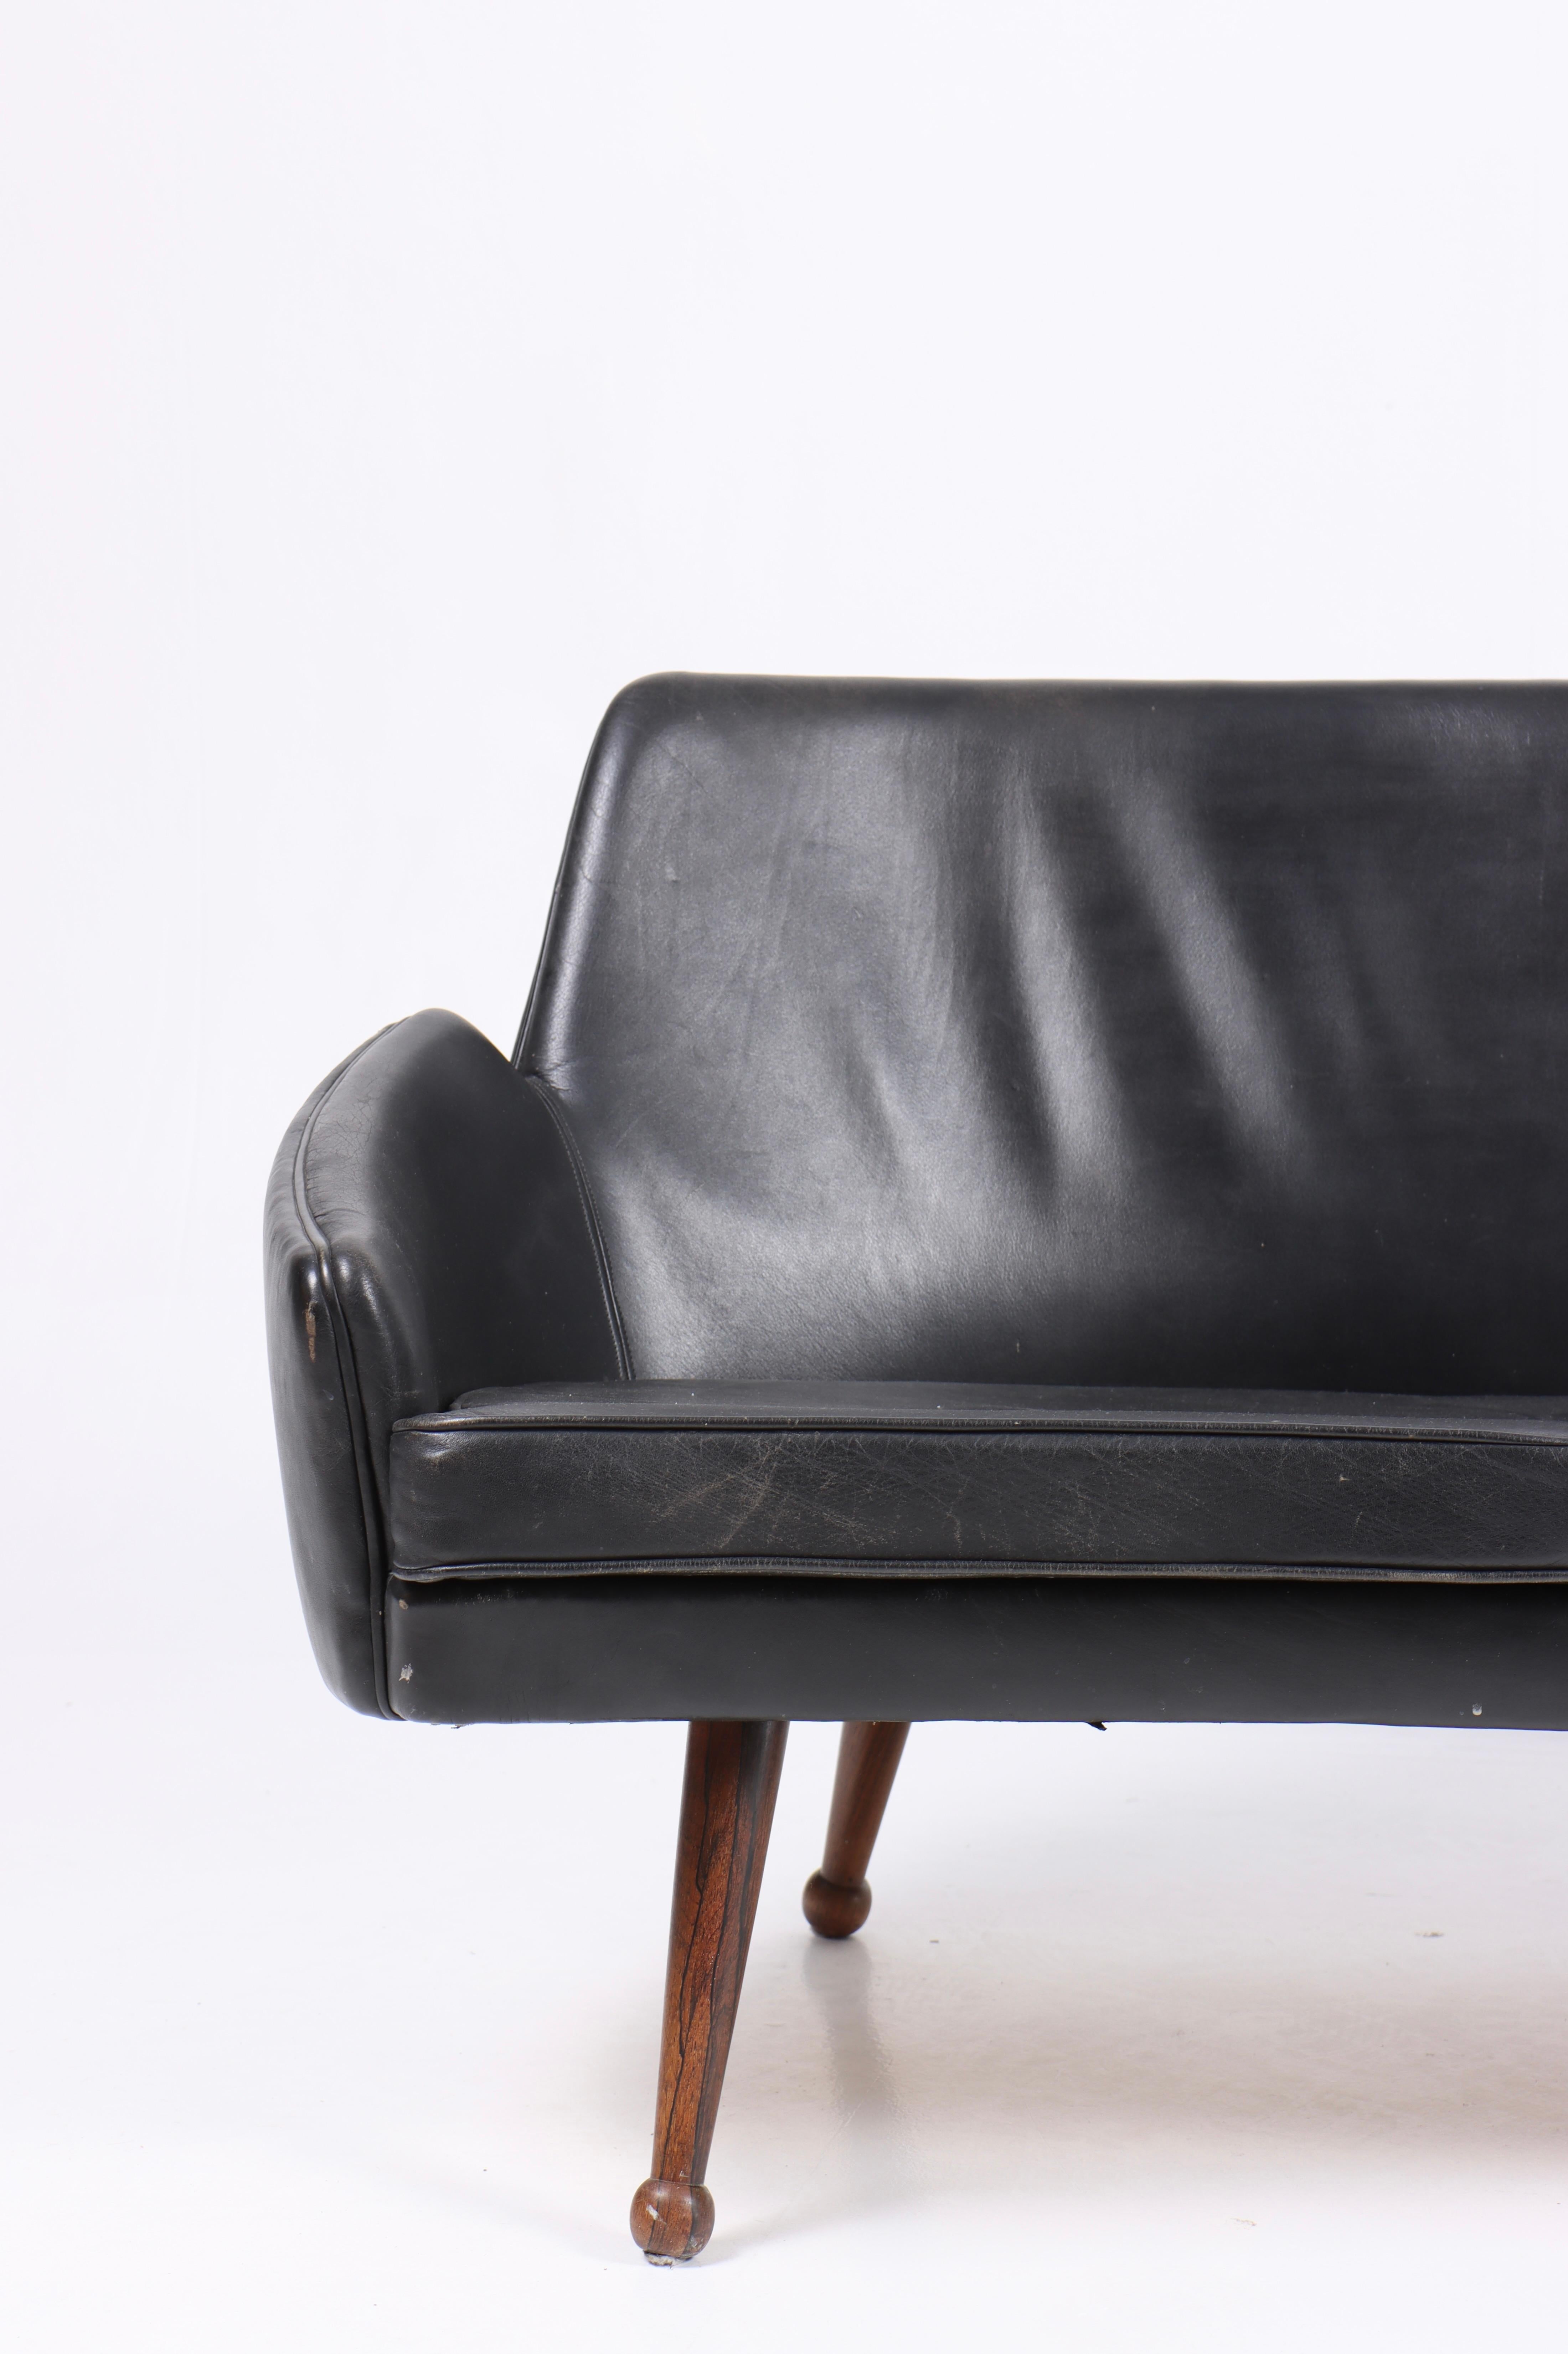 Leicht geschwungenes, dreisitziges Sofa aus patiniertem Leder, entworfen und hergestellt in Dänemark. Toller Originalzustand.